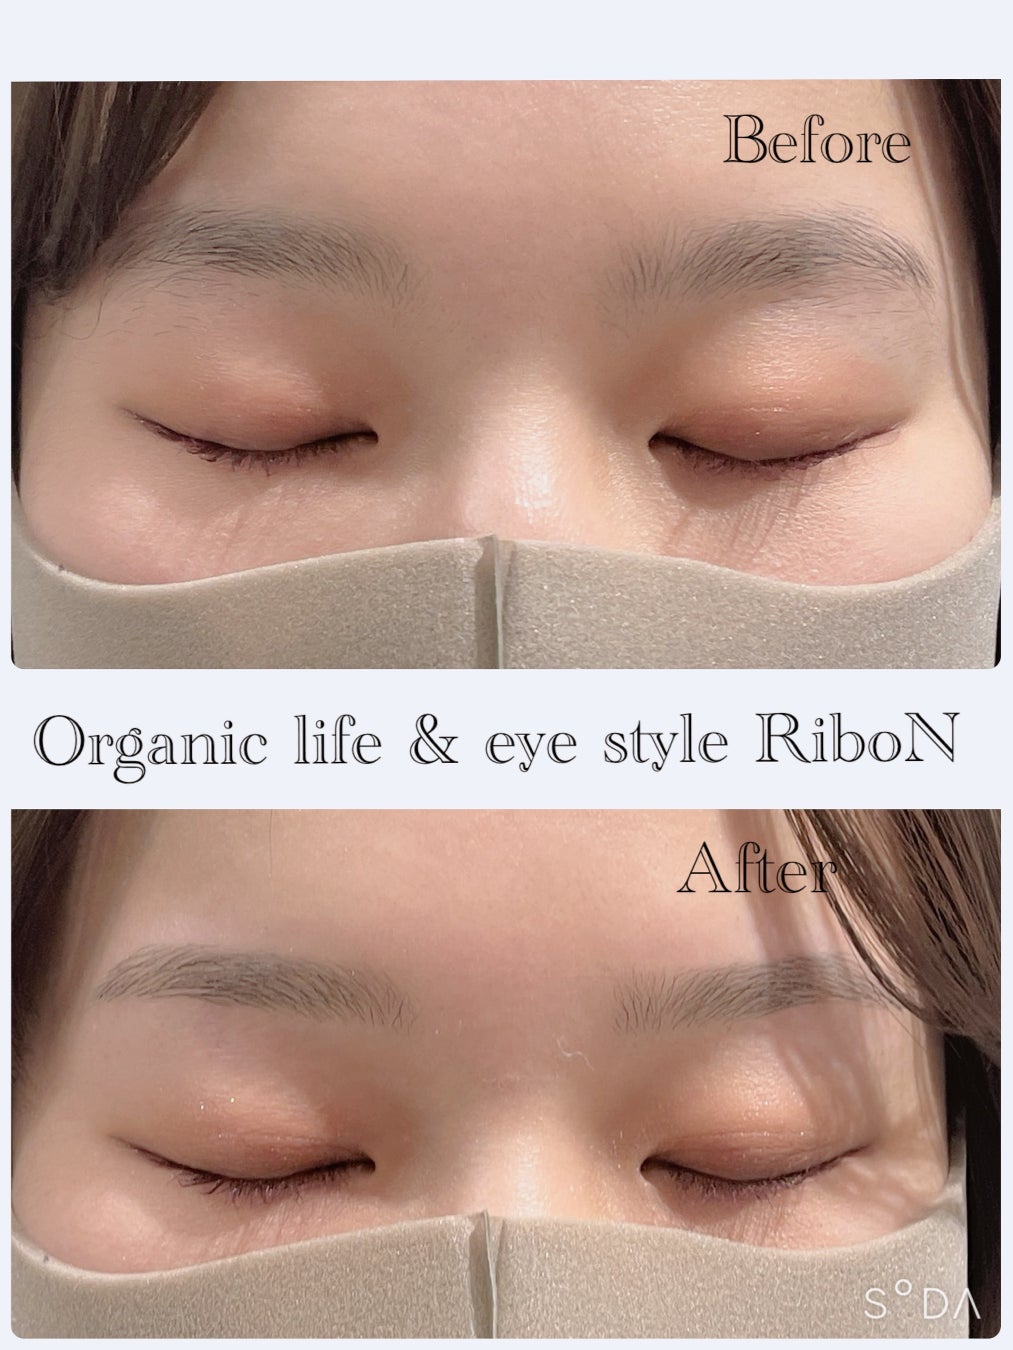 ホットペッパー口コミ1位の実績を持つ表参道の眉毛サロン【organic life & eye style RiboN】が眉スタイリングをプレゼントできる体験型の「ギフトカード」を開始しました